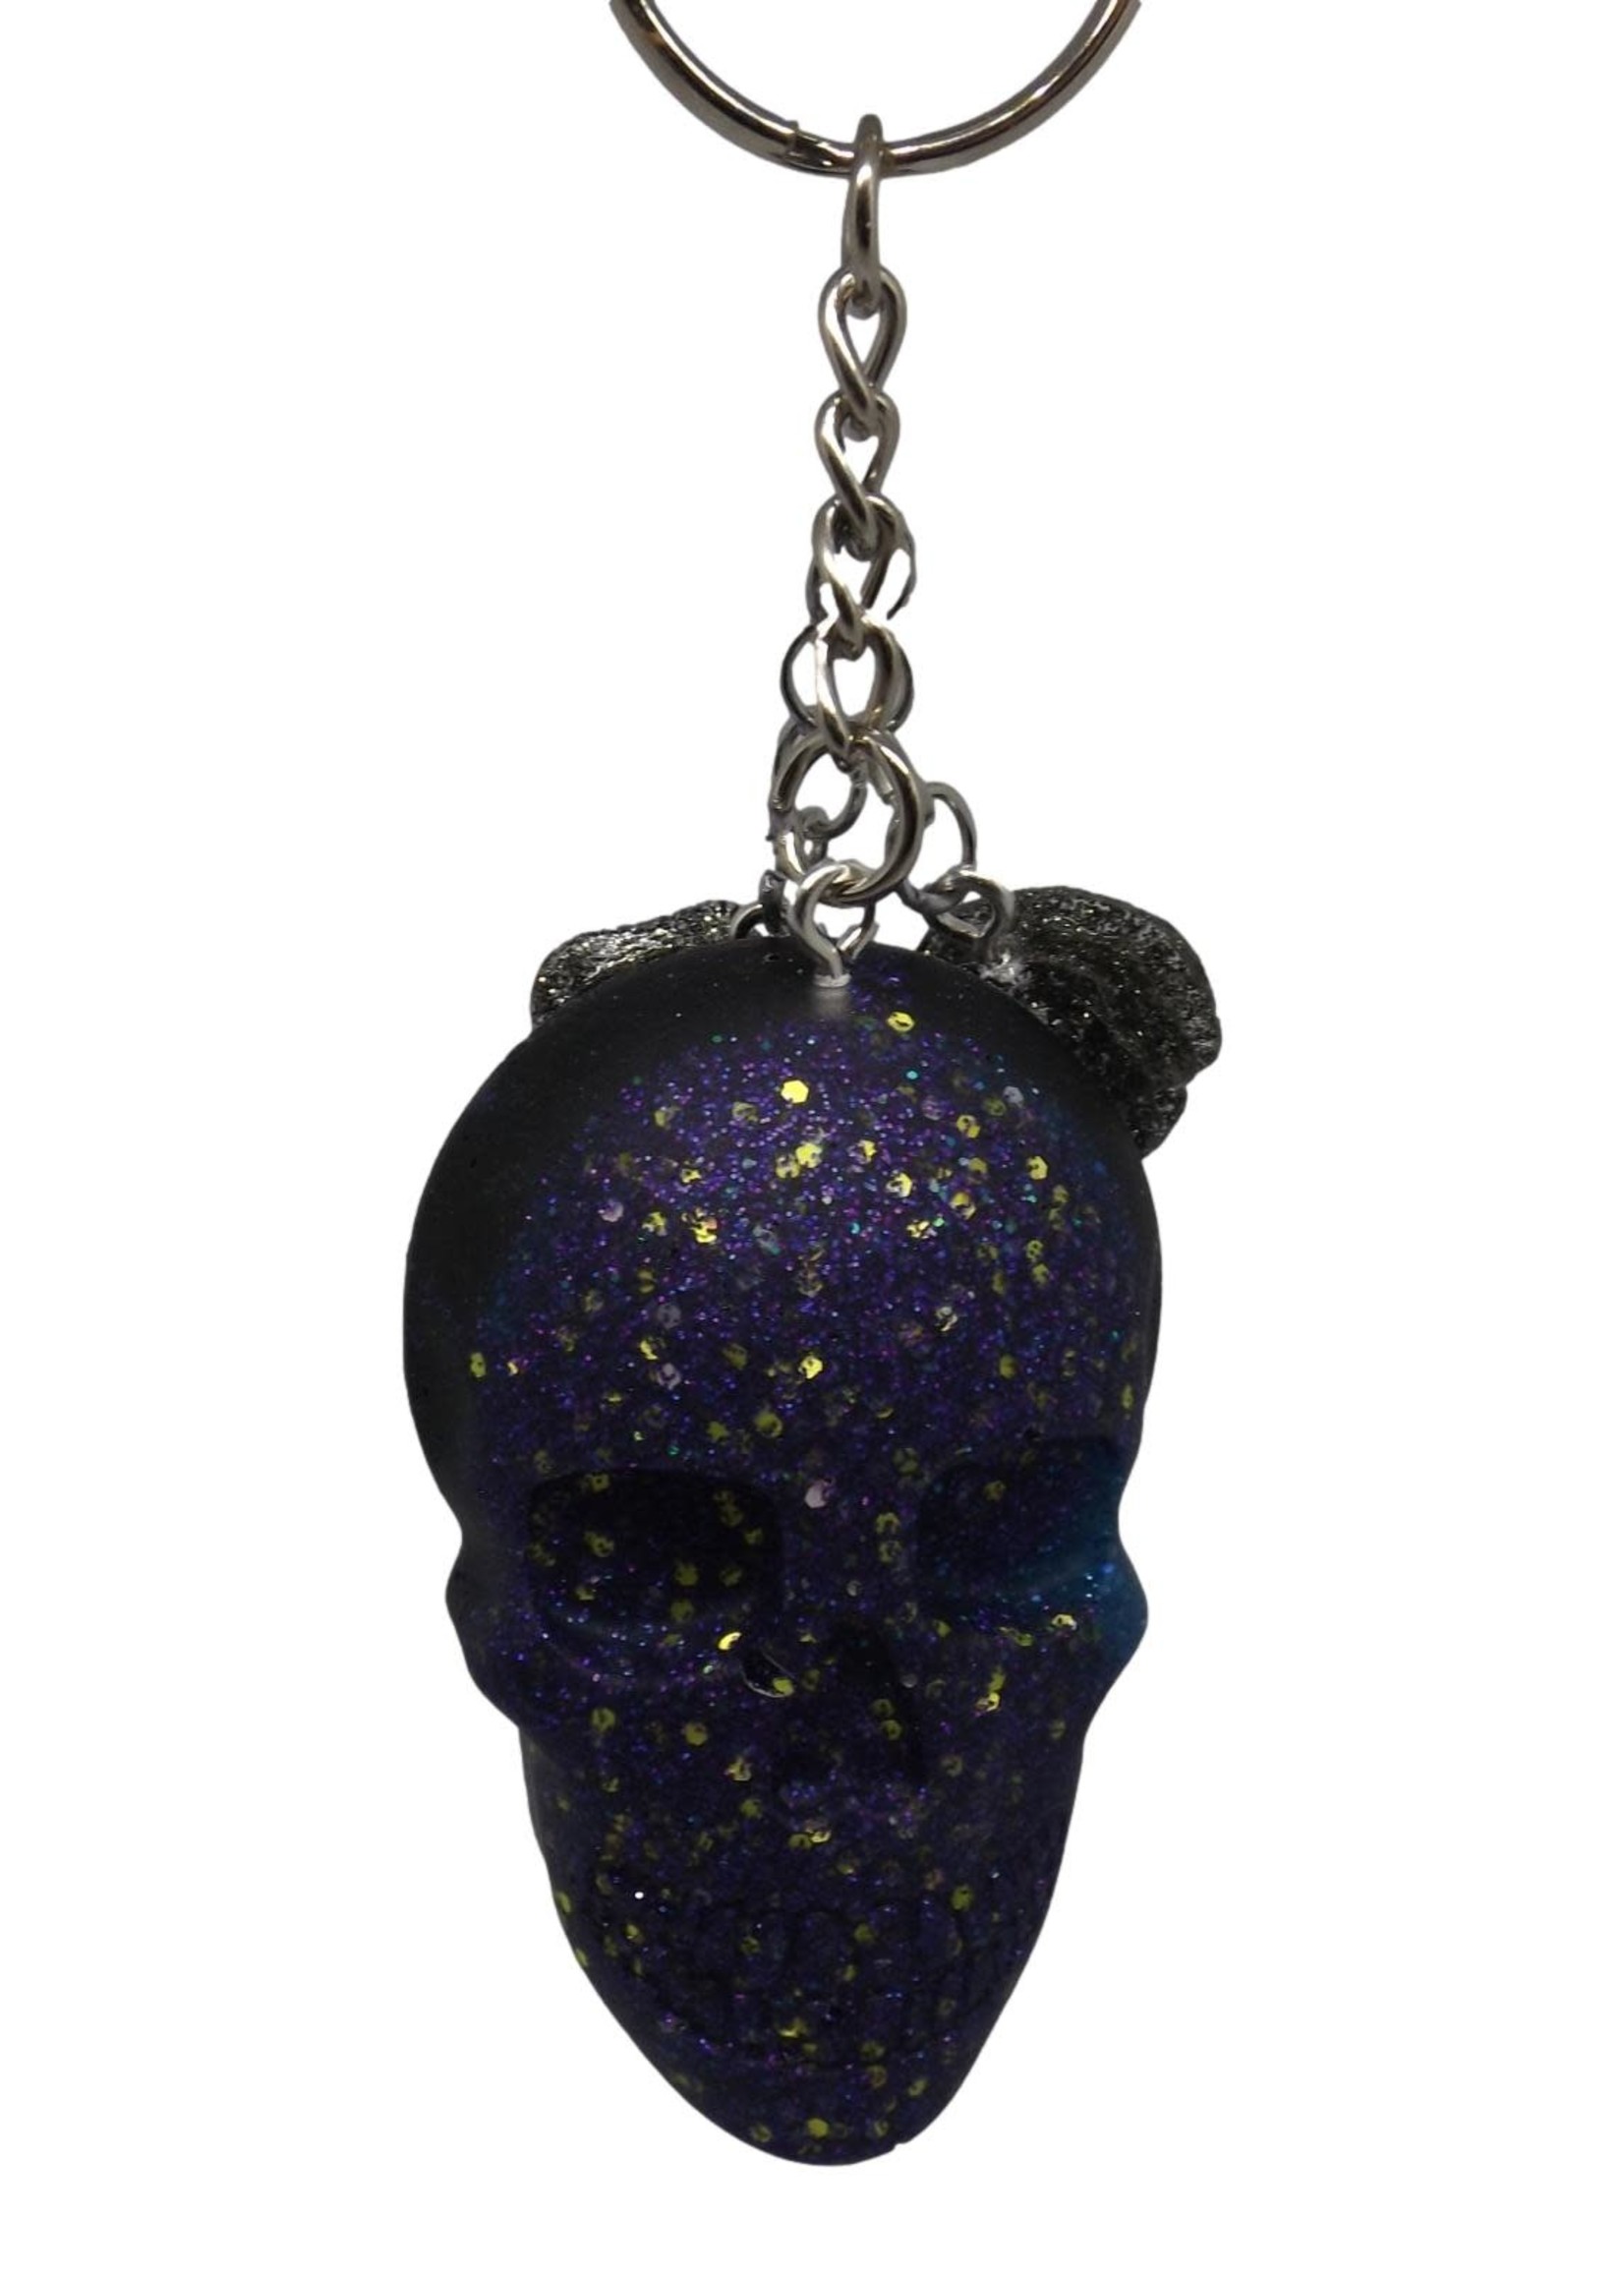 East Coast Sirens Black & Purple Skull Keychain